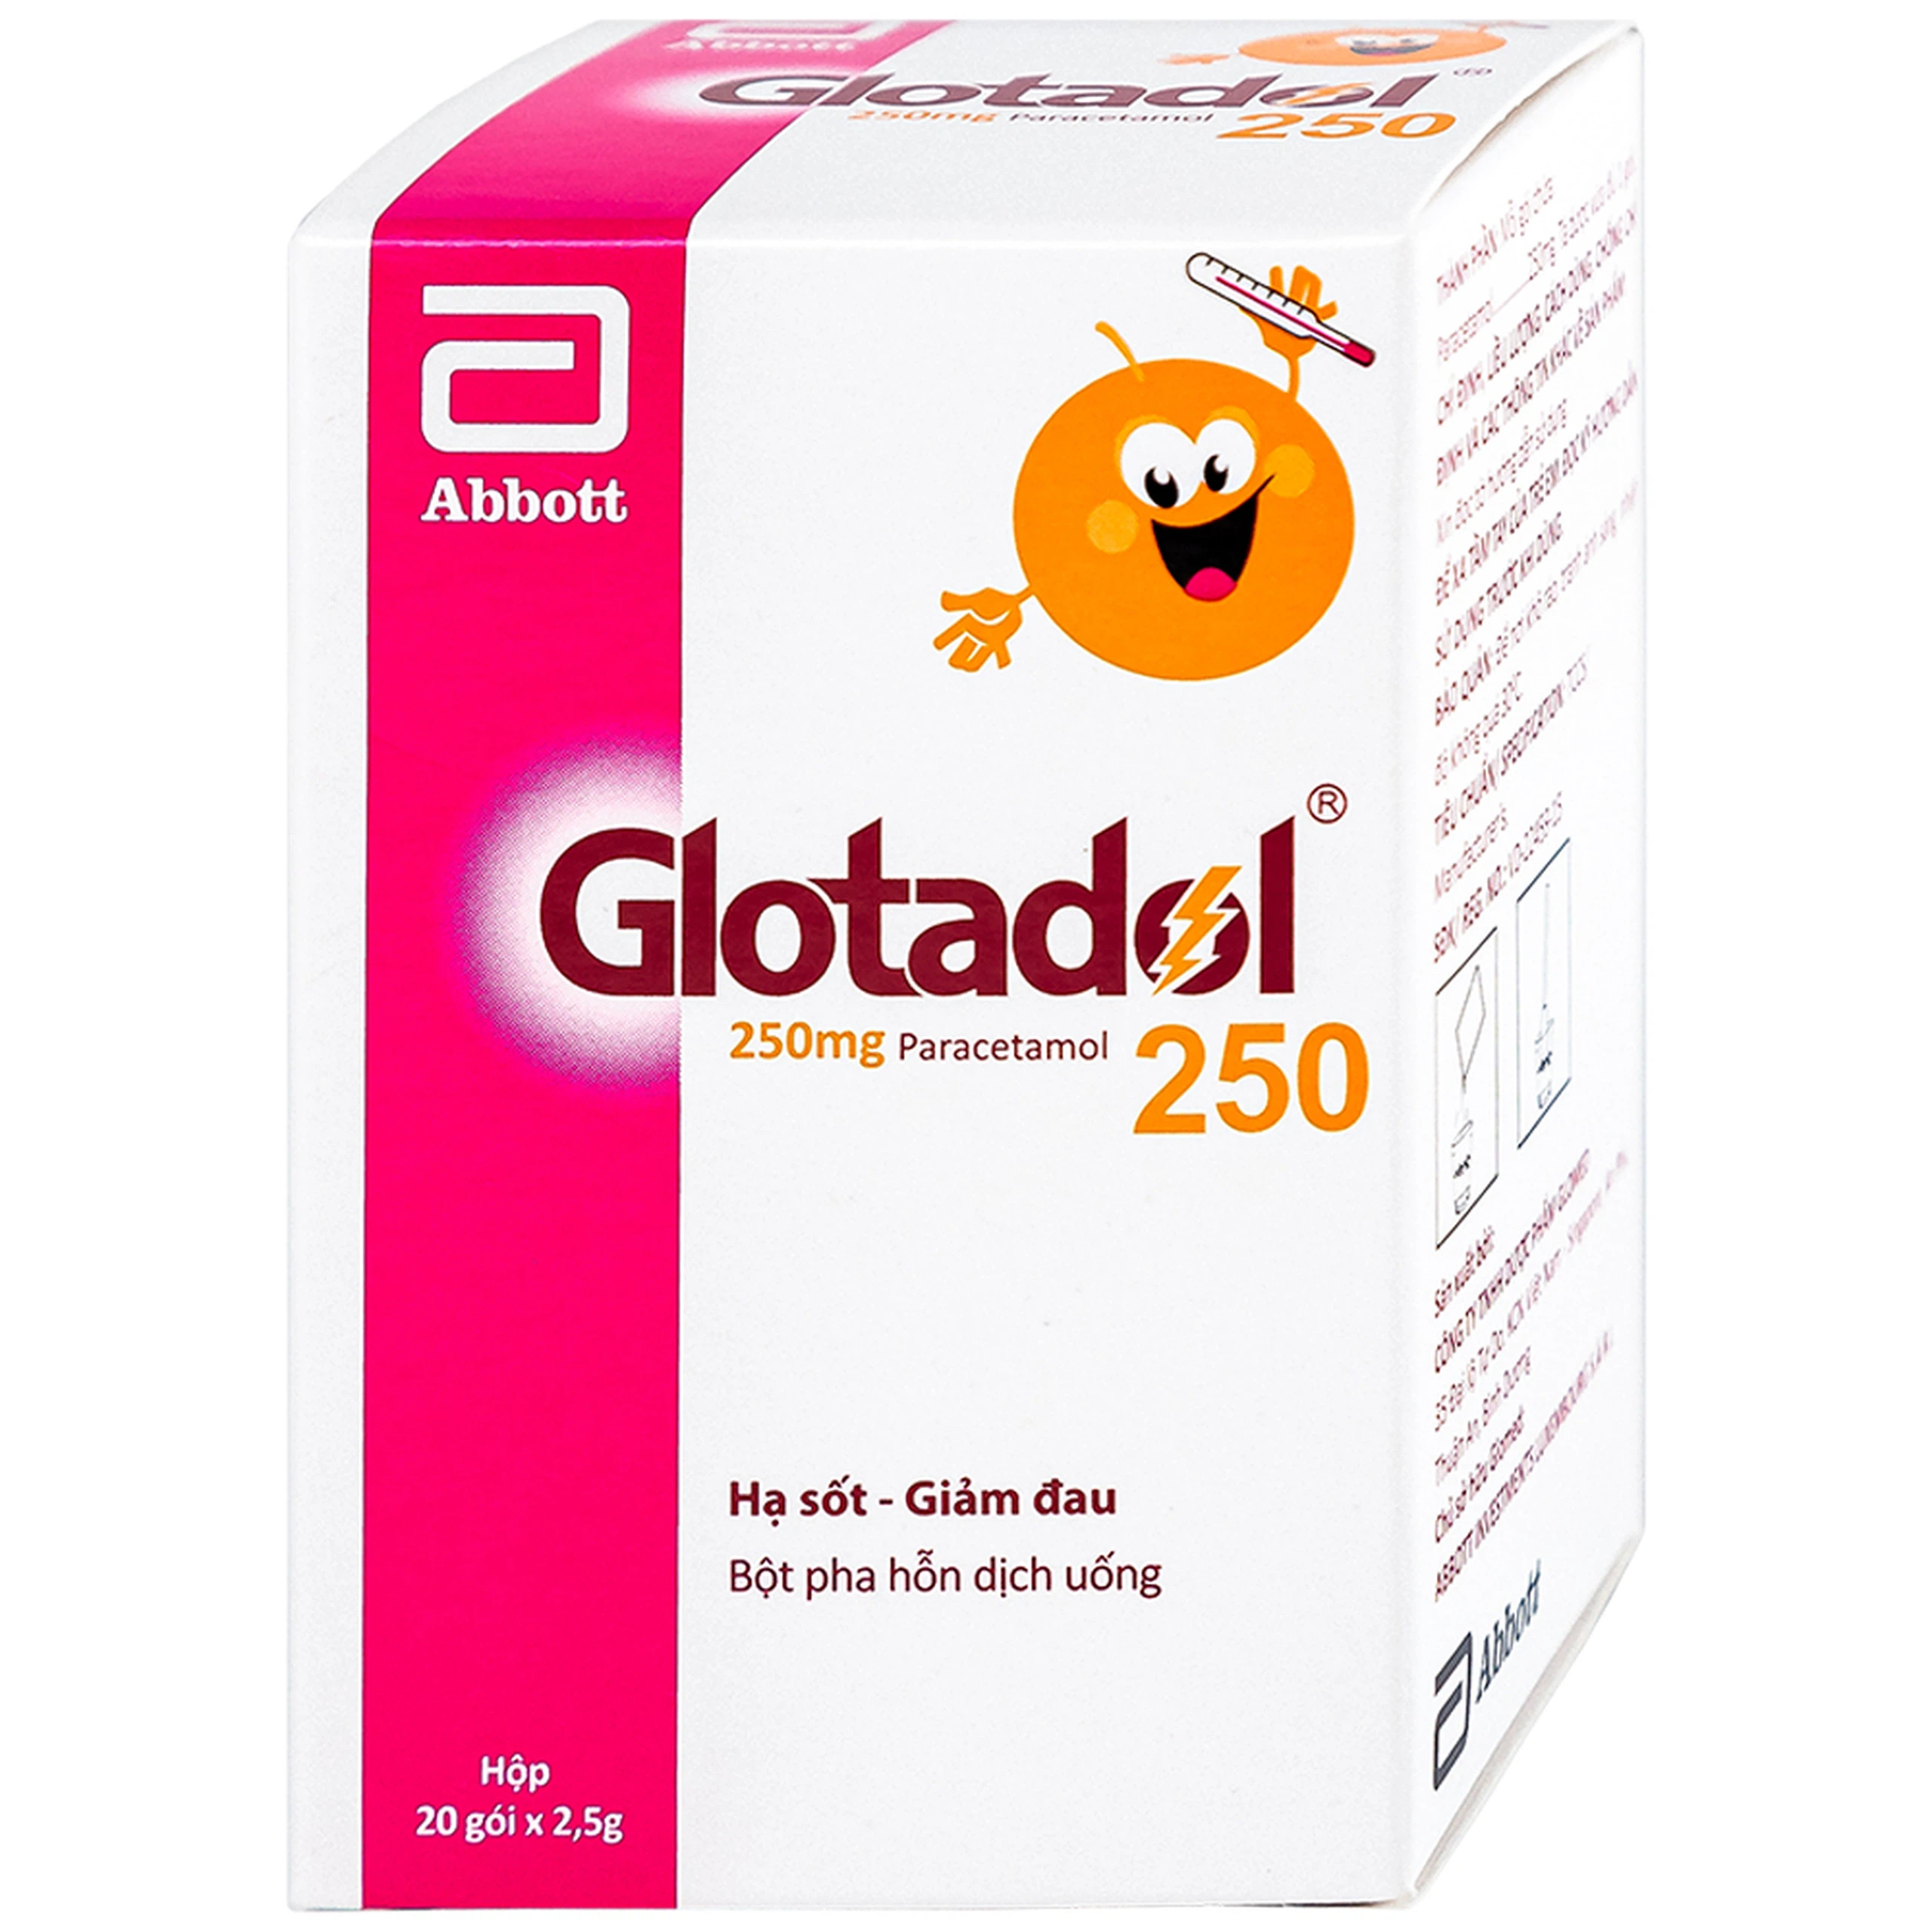 Bột Glotadol 250 Abbott hỗ trợ hạ sốt và giảm đau (20 gói x 2.5g)